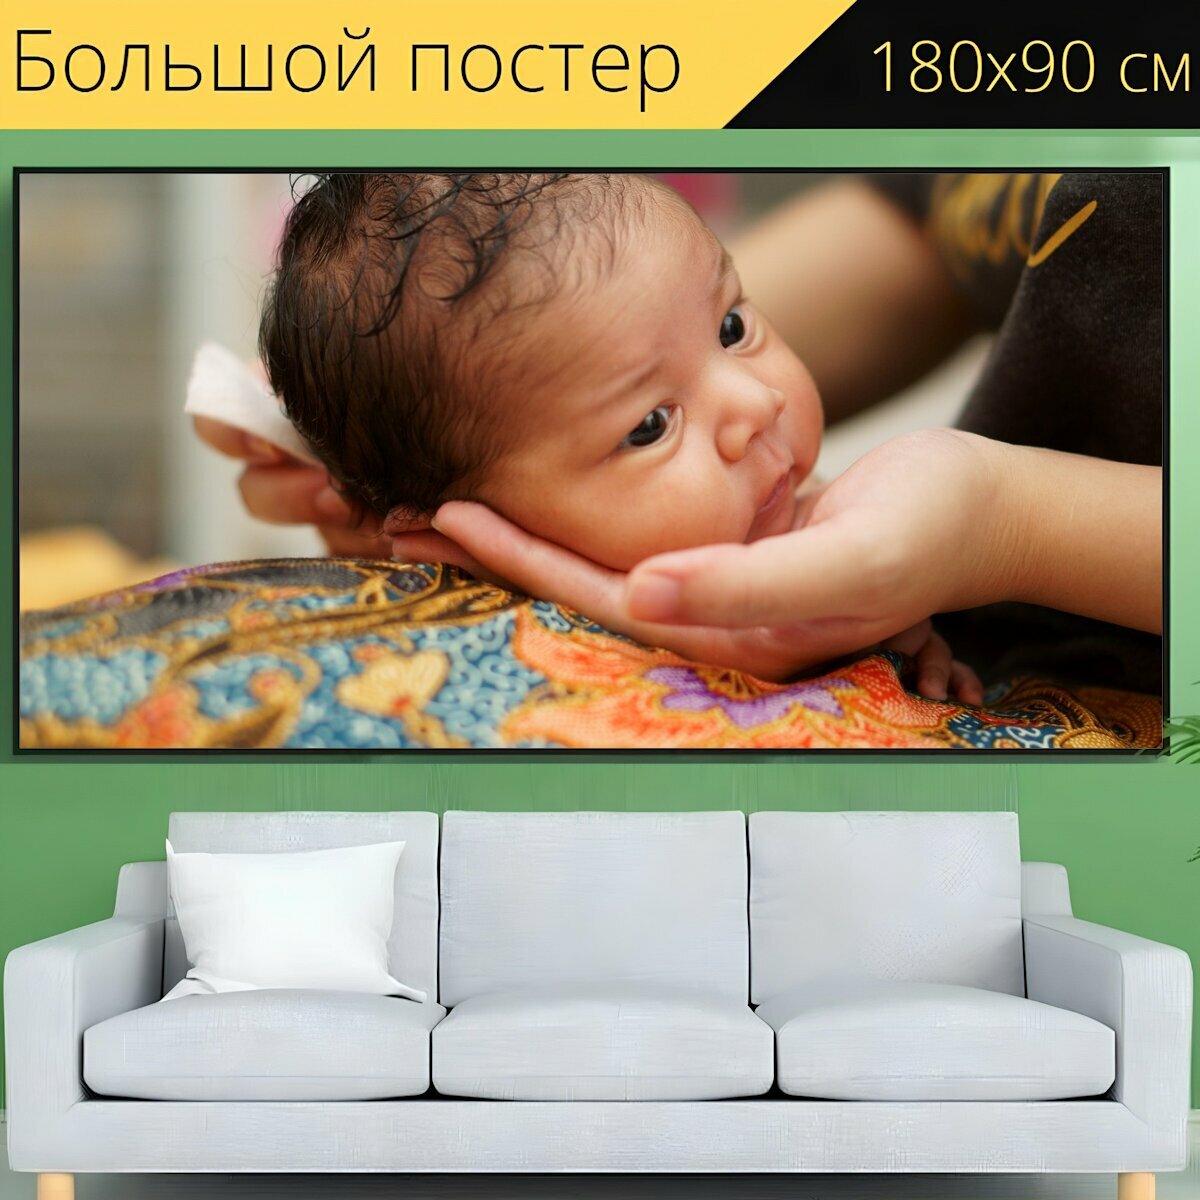 Большой постер "Заключение, новорожденный, детка" 180 x 90 см. для интерьера